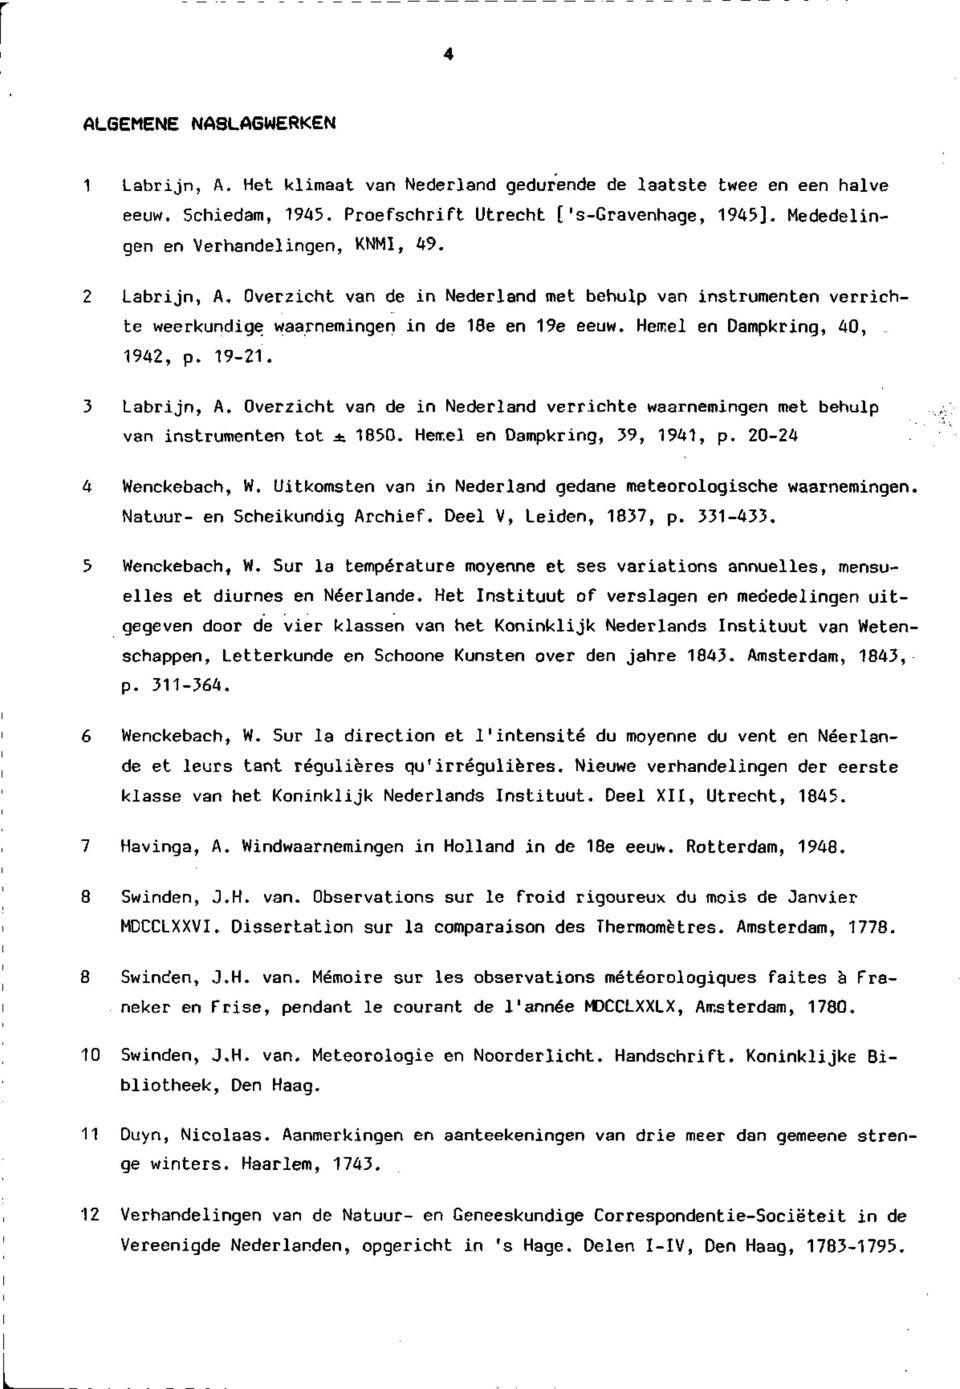 Hemel en Dampkring, 40, 1942, p. 19-21. 3 Labrijn, A. Overzicht van de in Nederland verrichte waarnemingen met behulp van instrumenten tot ± 1850. Hemel en Dampkring, 39, 1941, p.